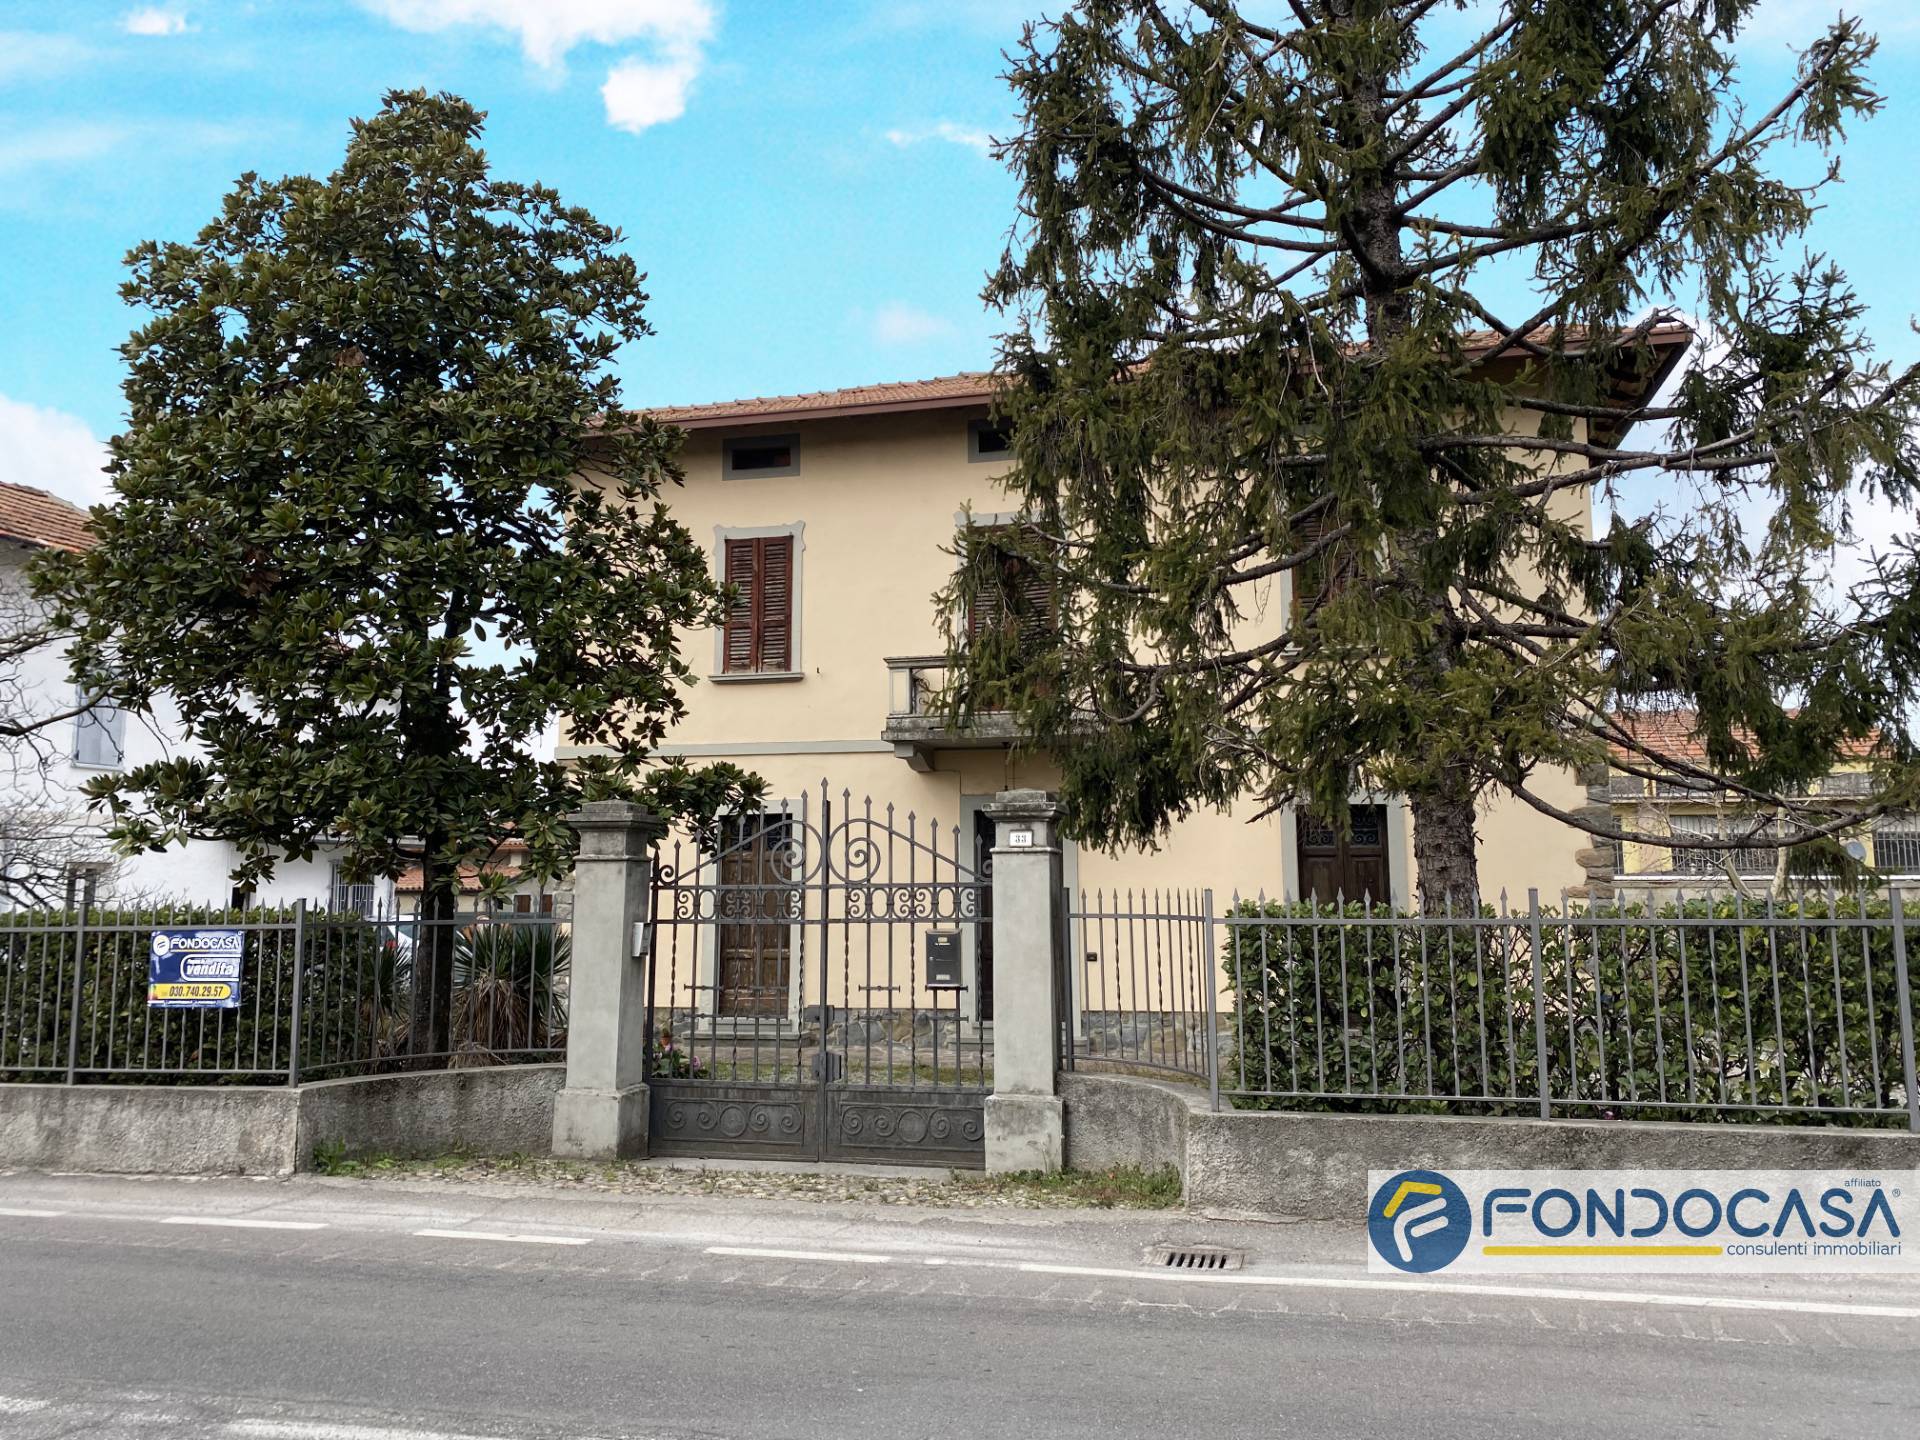 Villa in vendita a Palazzolo sull'Oglio, 8 locali, Trattative riservate | PortaleAgenzieImmobiliari.it